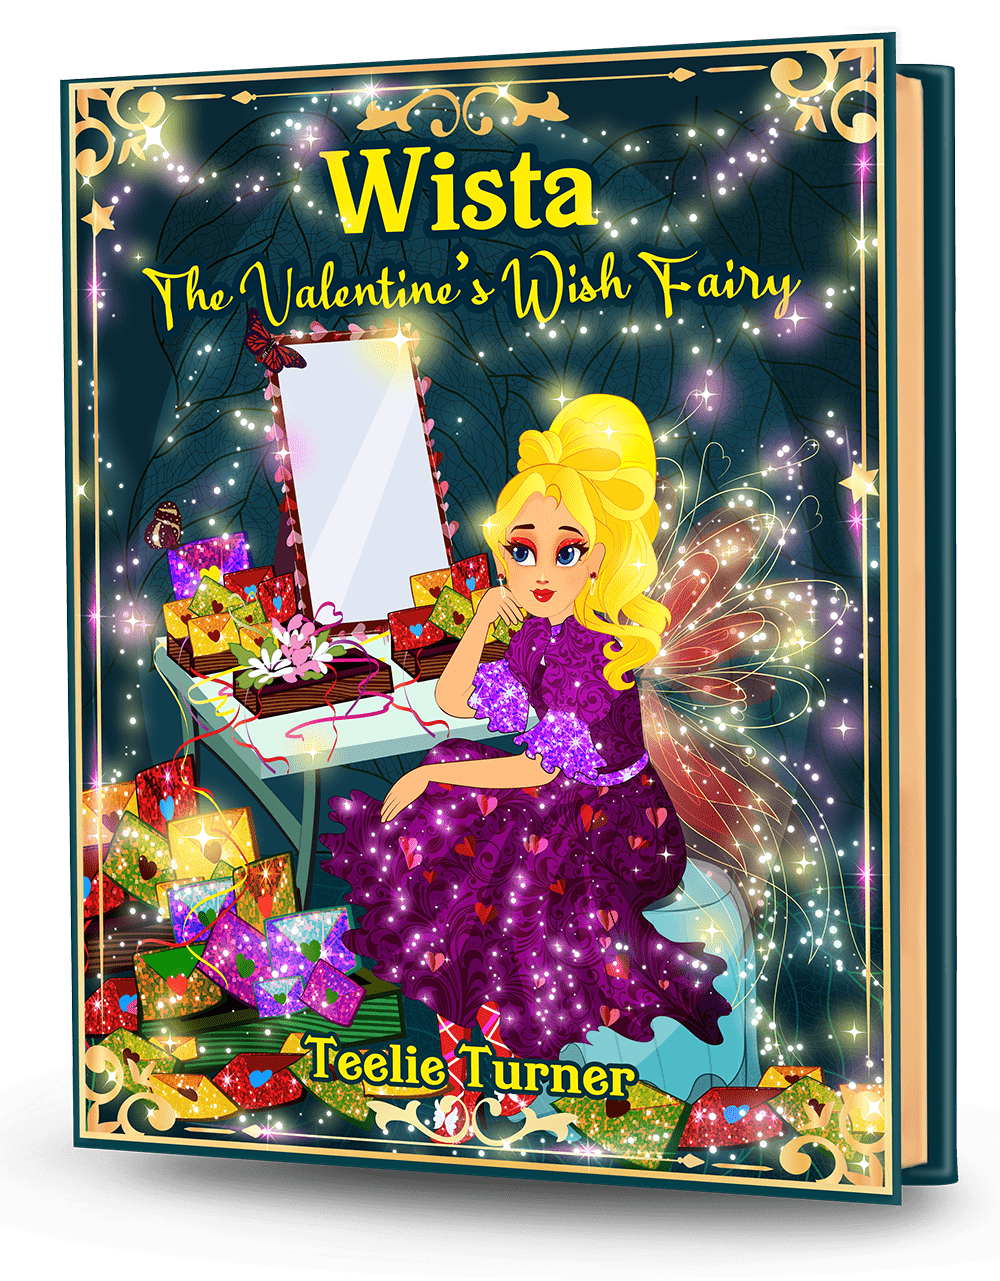 wista the valentine's wish fairy 3dbook